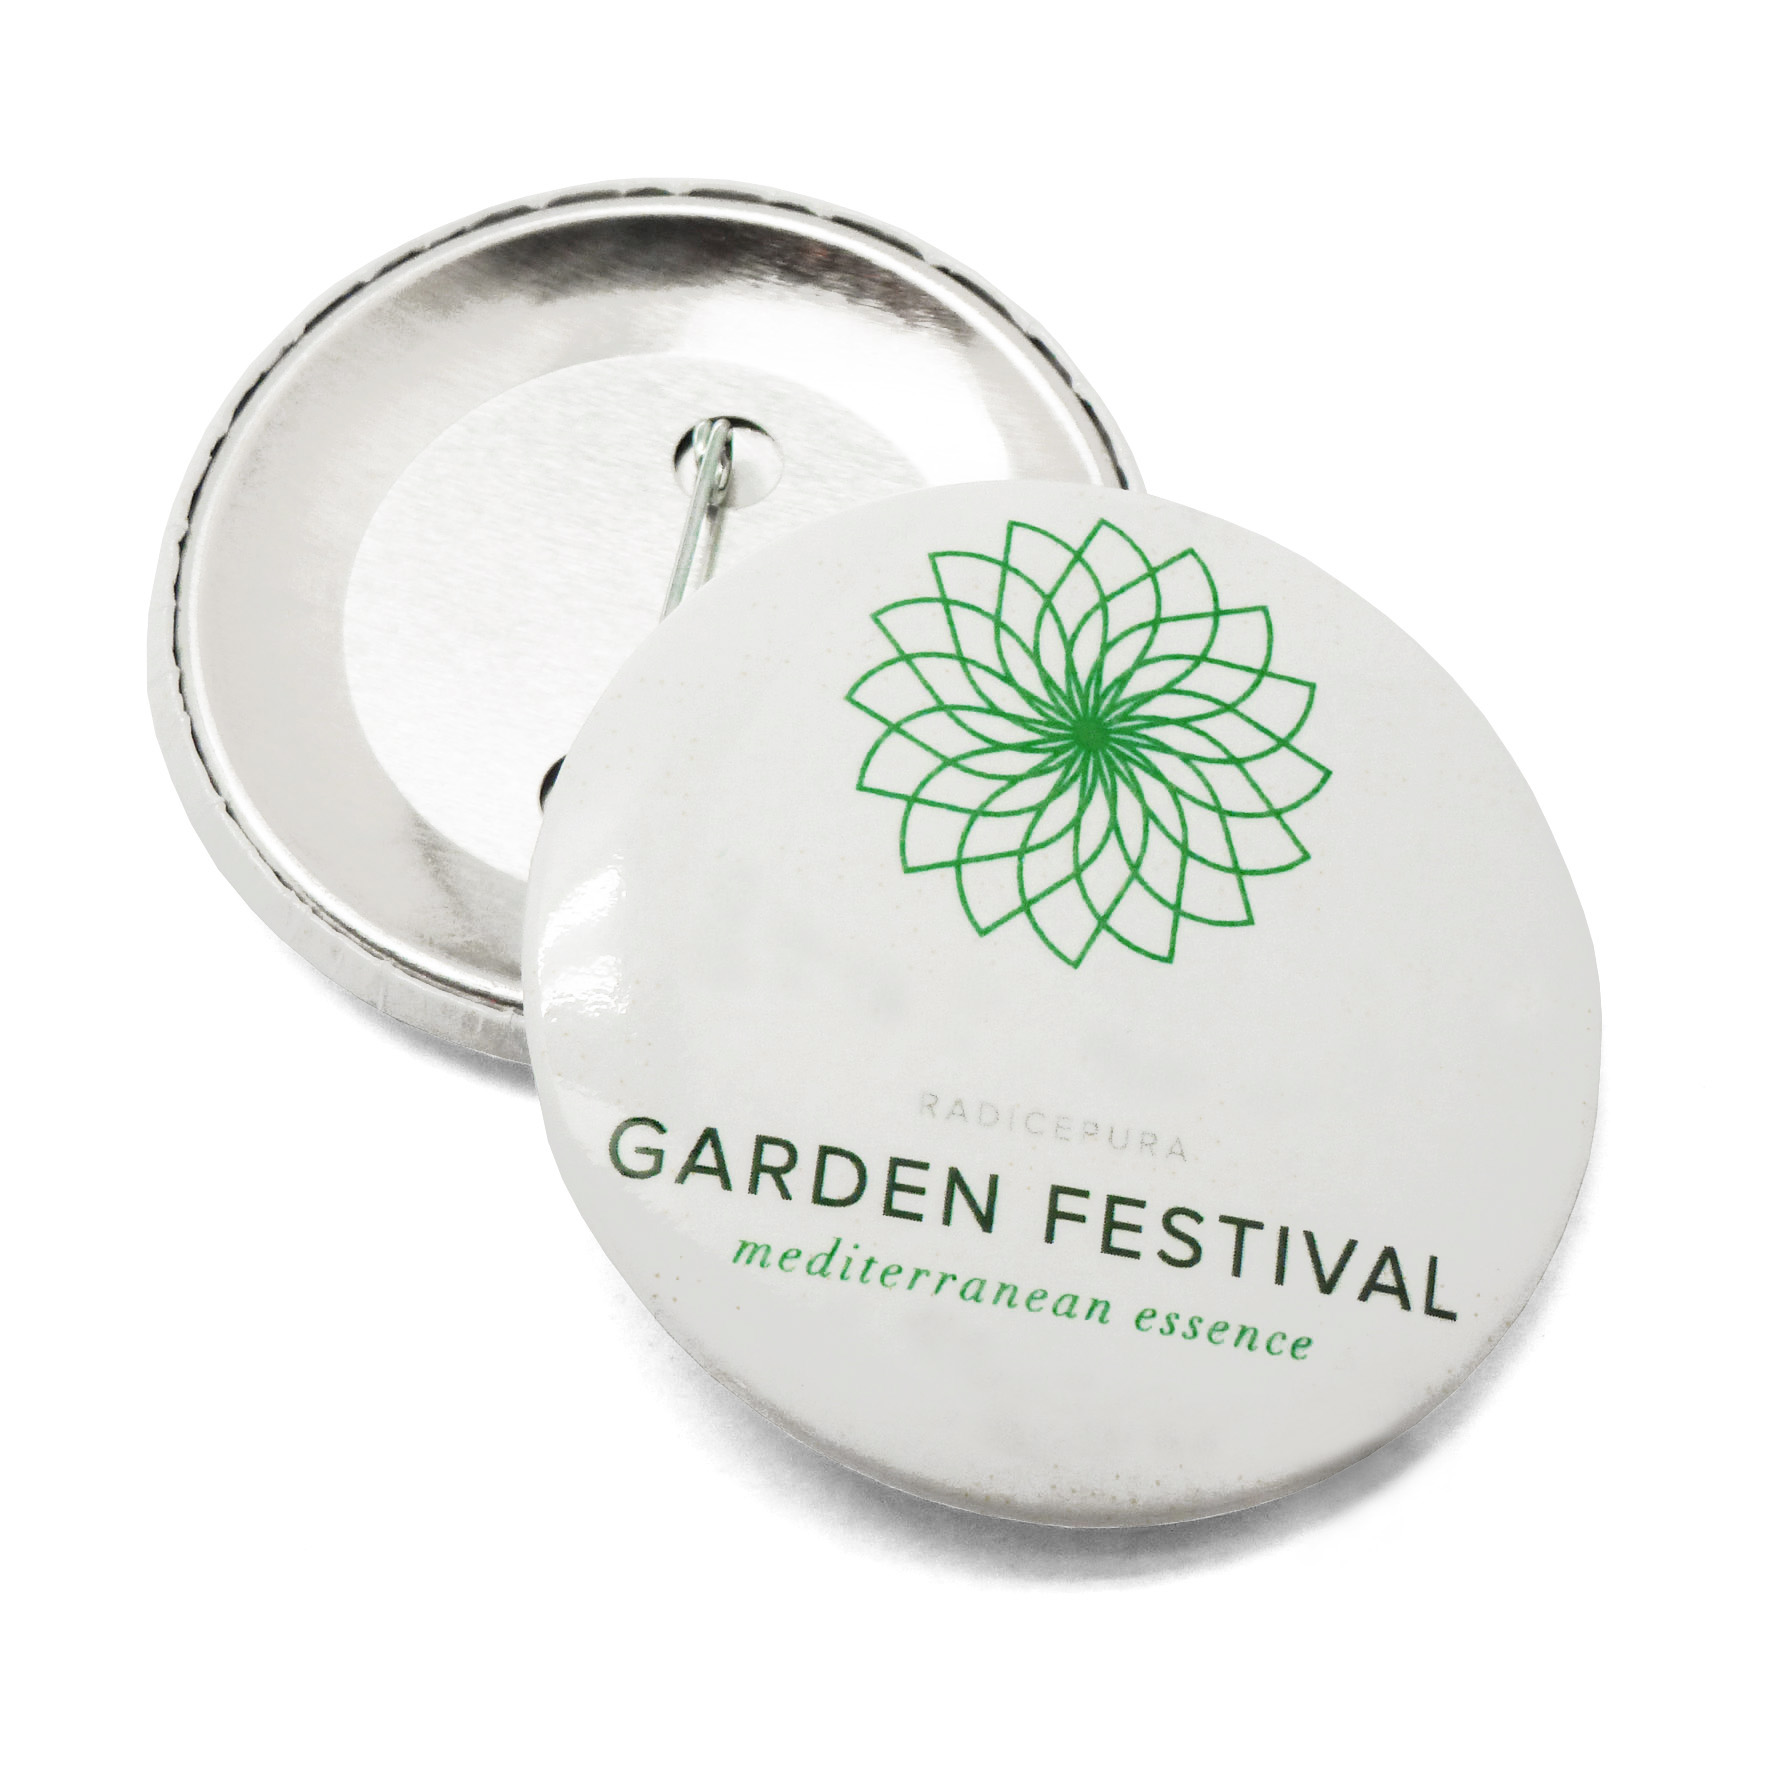 Spilla per RadicePura Garden festival